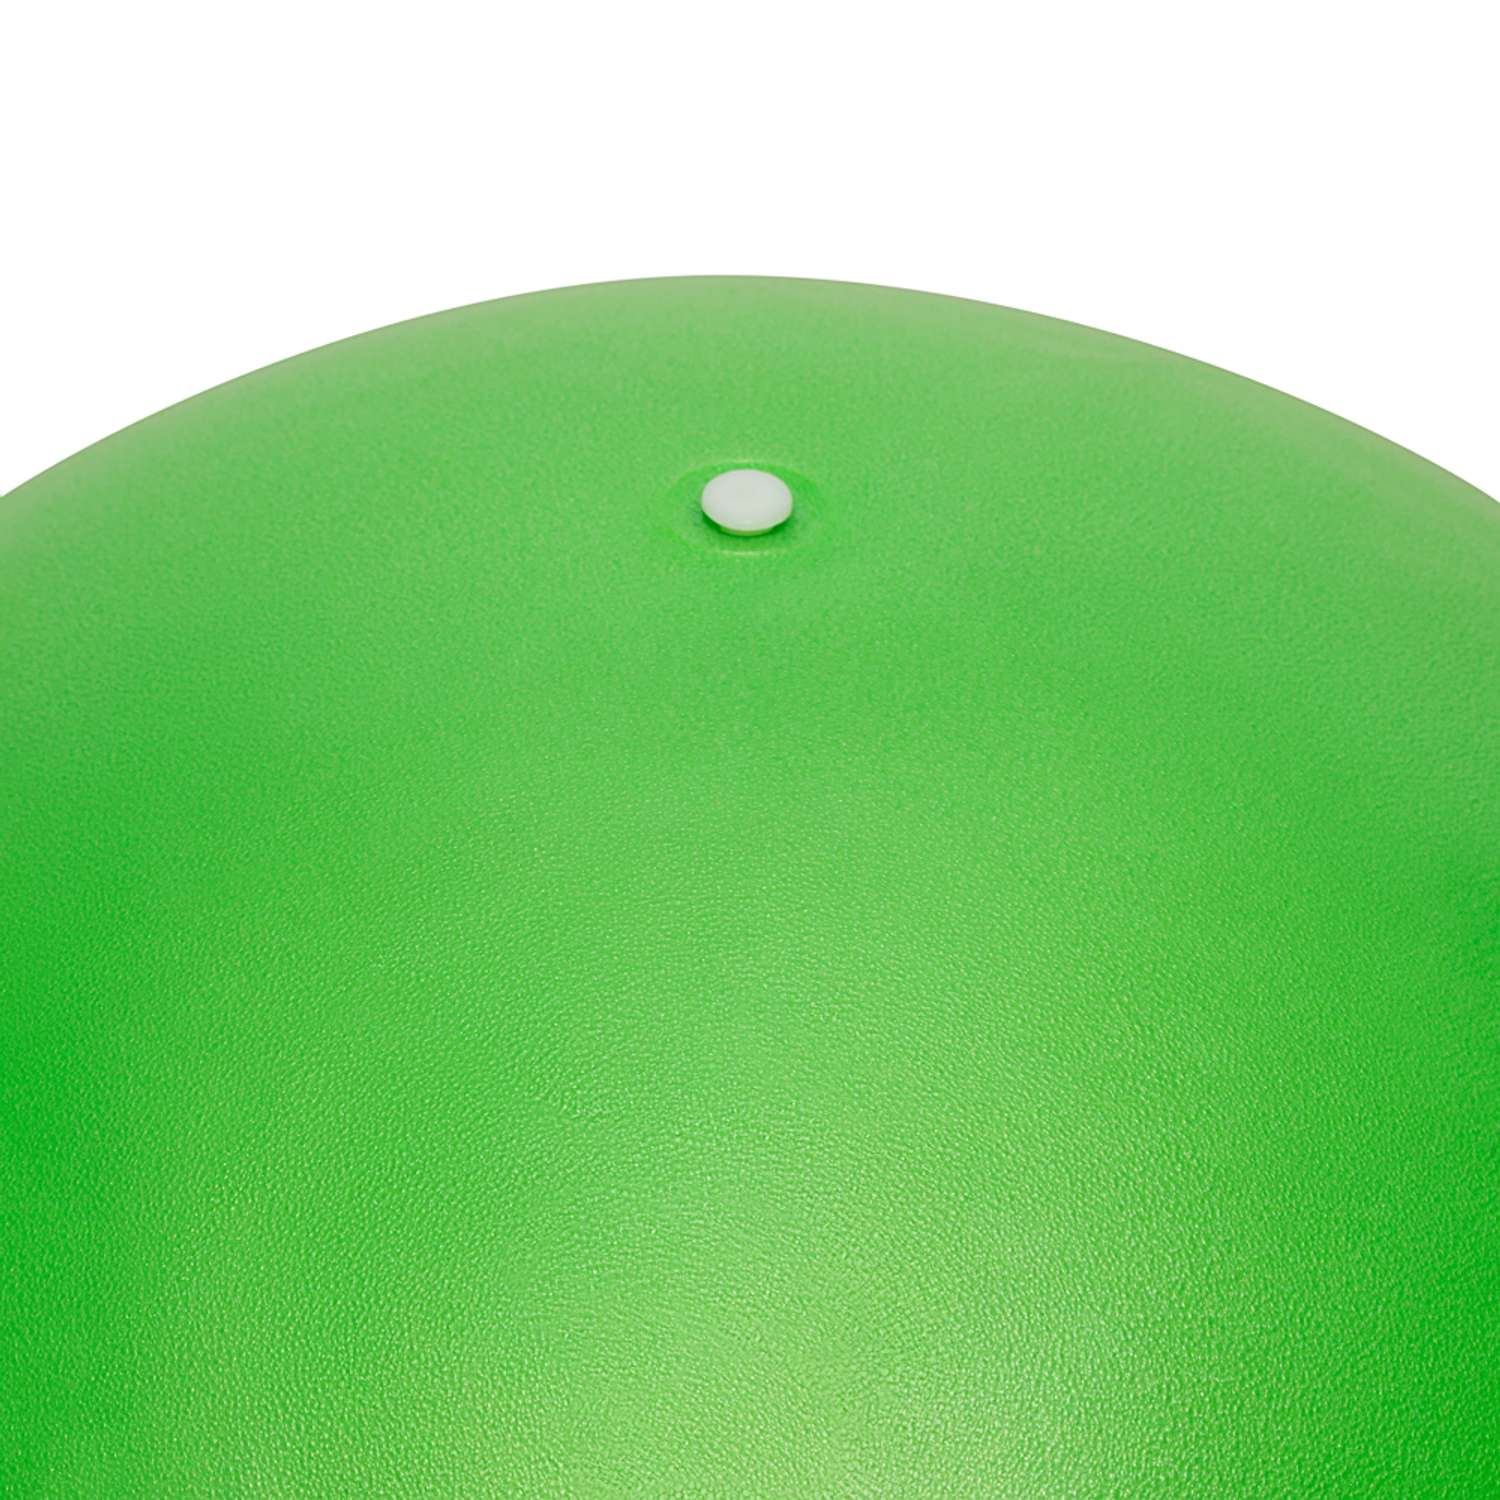 Фитбол STRONG BODY 55 см ABS антивзрыв зеленый для фитнеса Насос в комплекте - фото 3